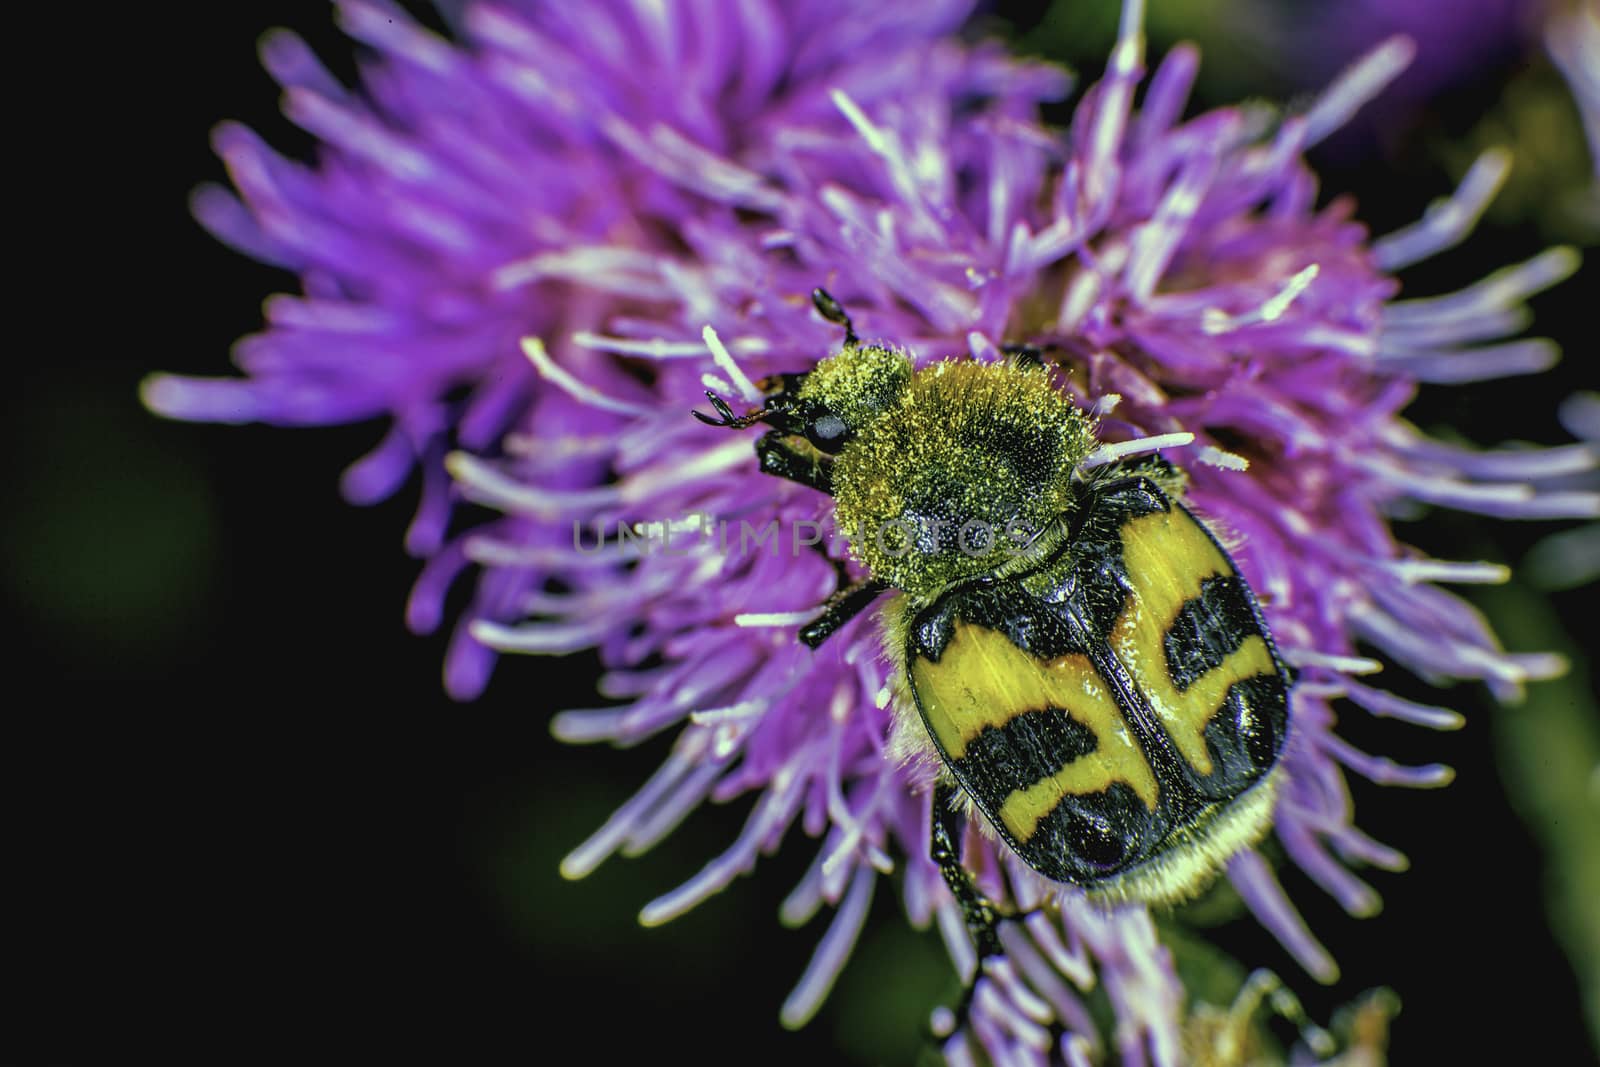 Bee beetle ore Trichius fasciatus